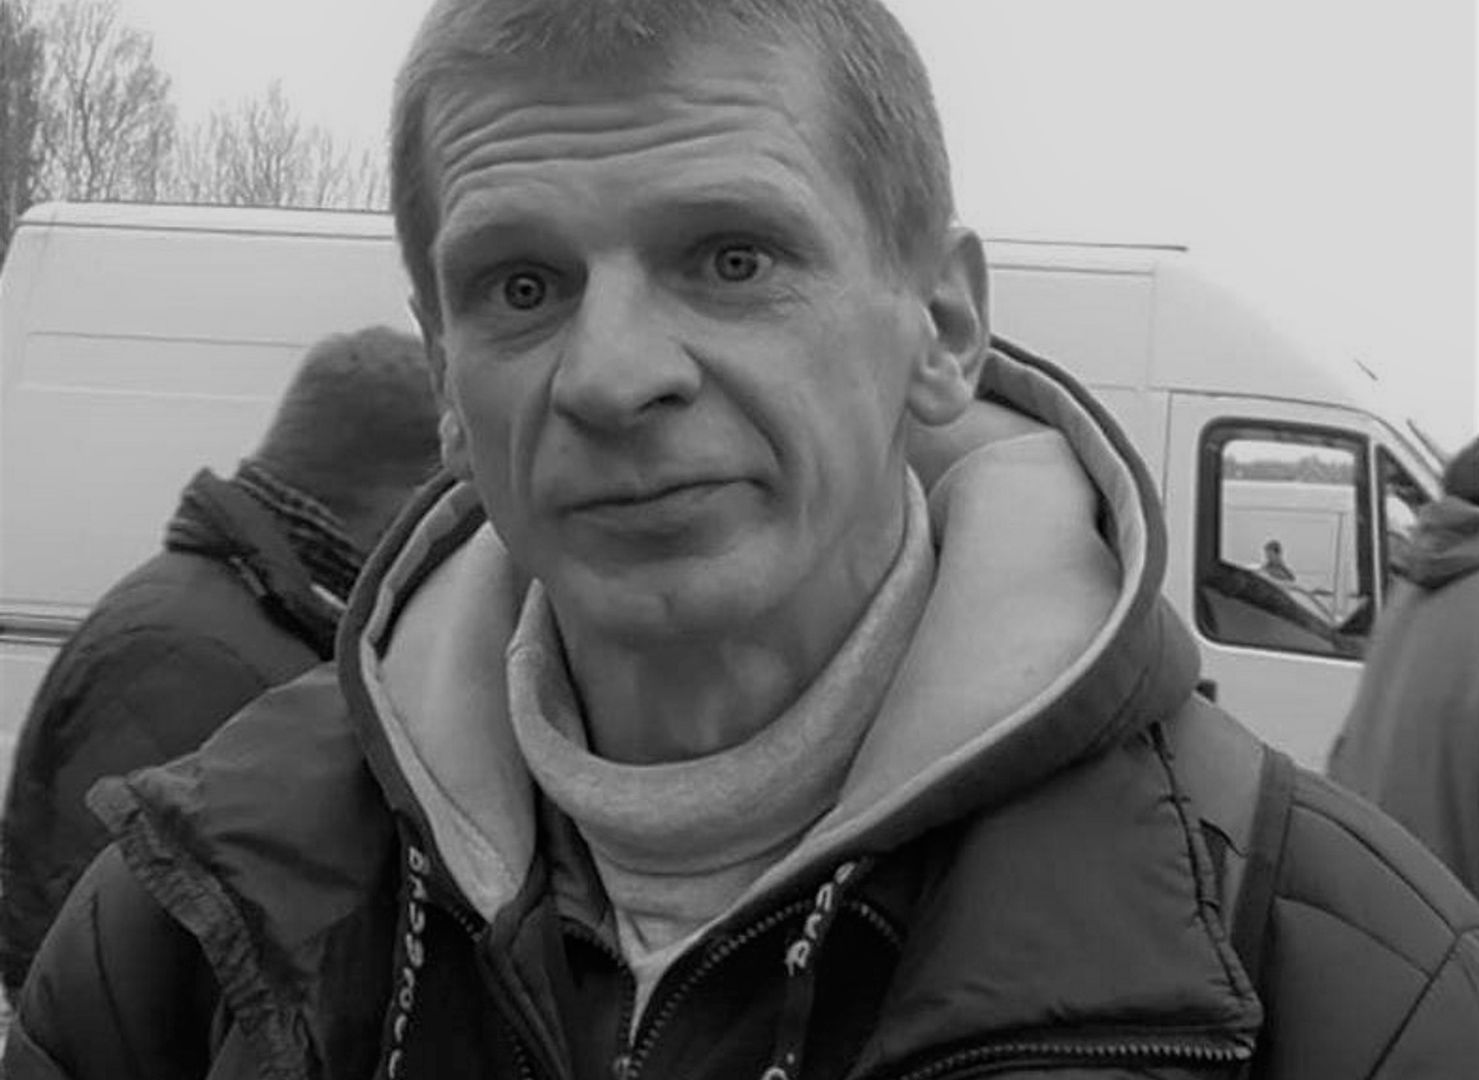 Szczegóły pogrzebu "Majora" Suchodolskiego. Organizatorzy apelują